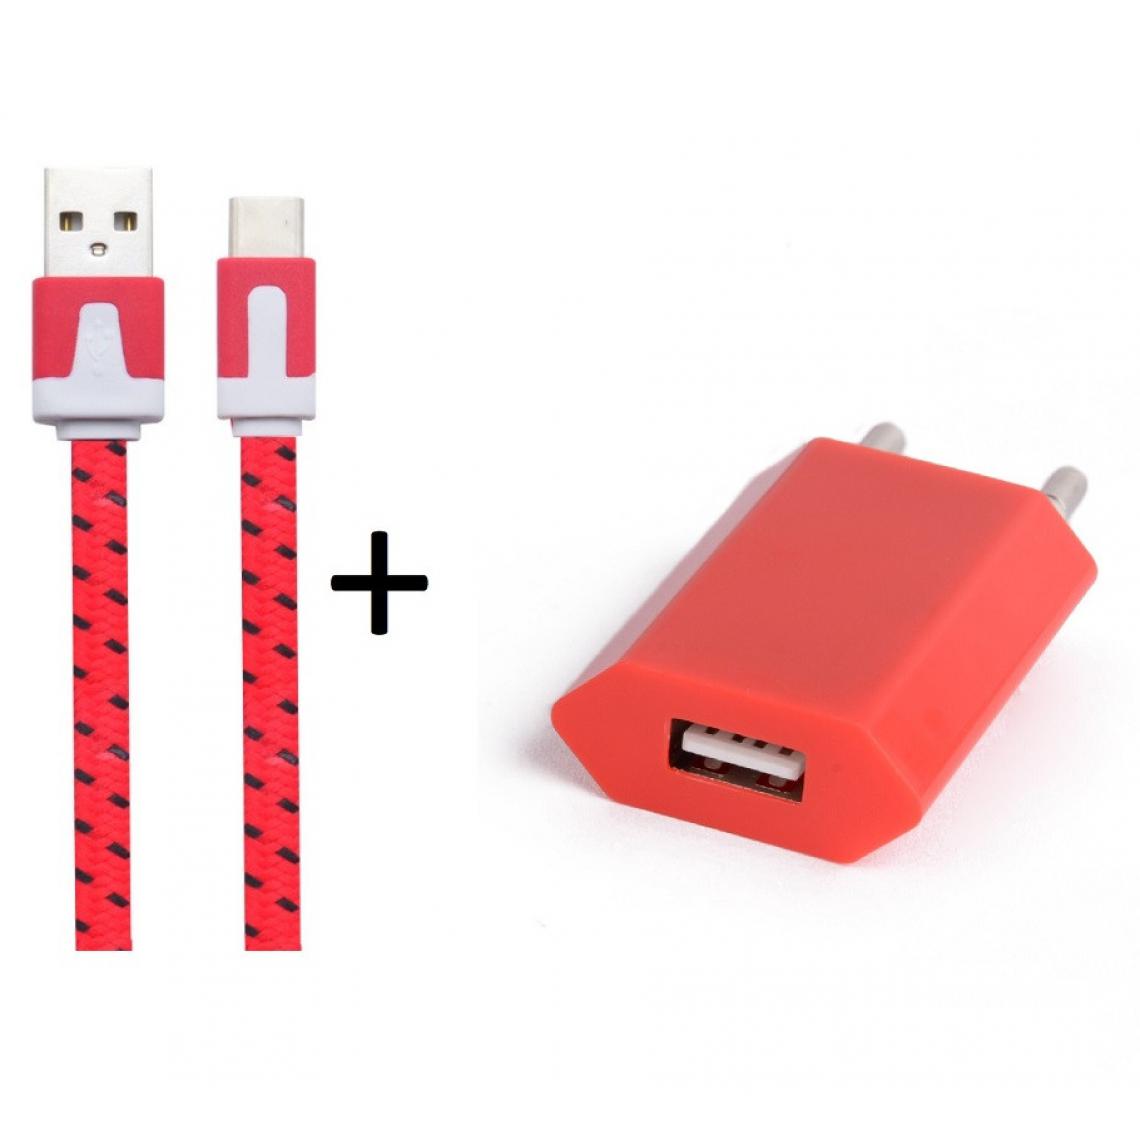 Shot - Pack Chargeur pour OPPO Reno Smartphone Type C (Cable Noodle 1m Chargeur + Prise Secteur USB) Murale Android (ROUGE) - Chargeur secteur téléphone